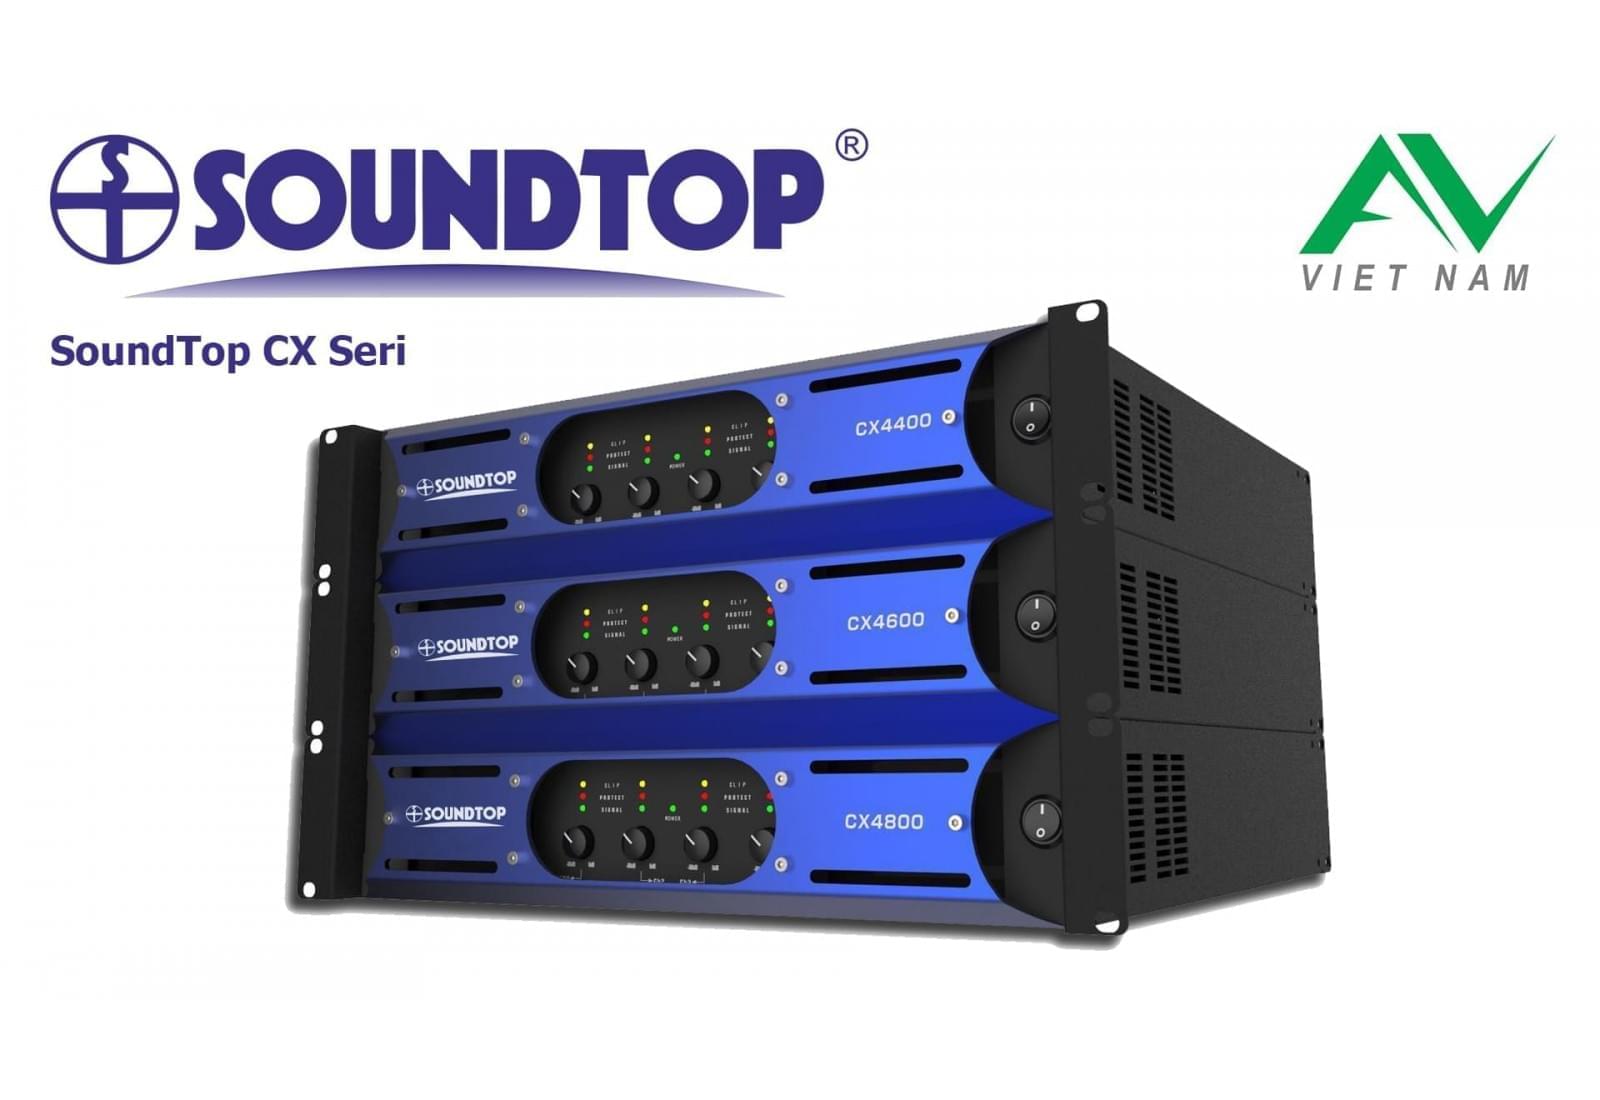 SoundTop CX Seri